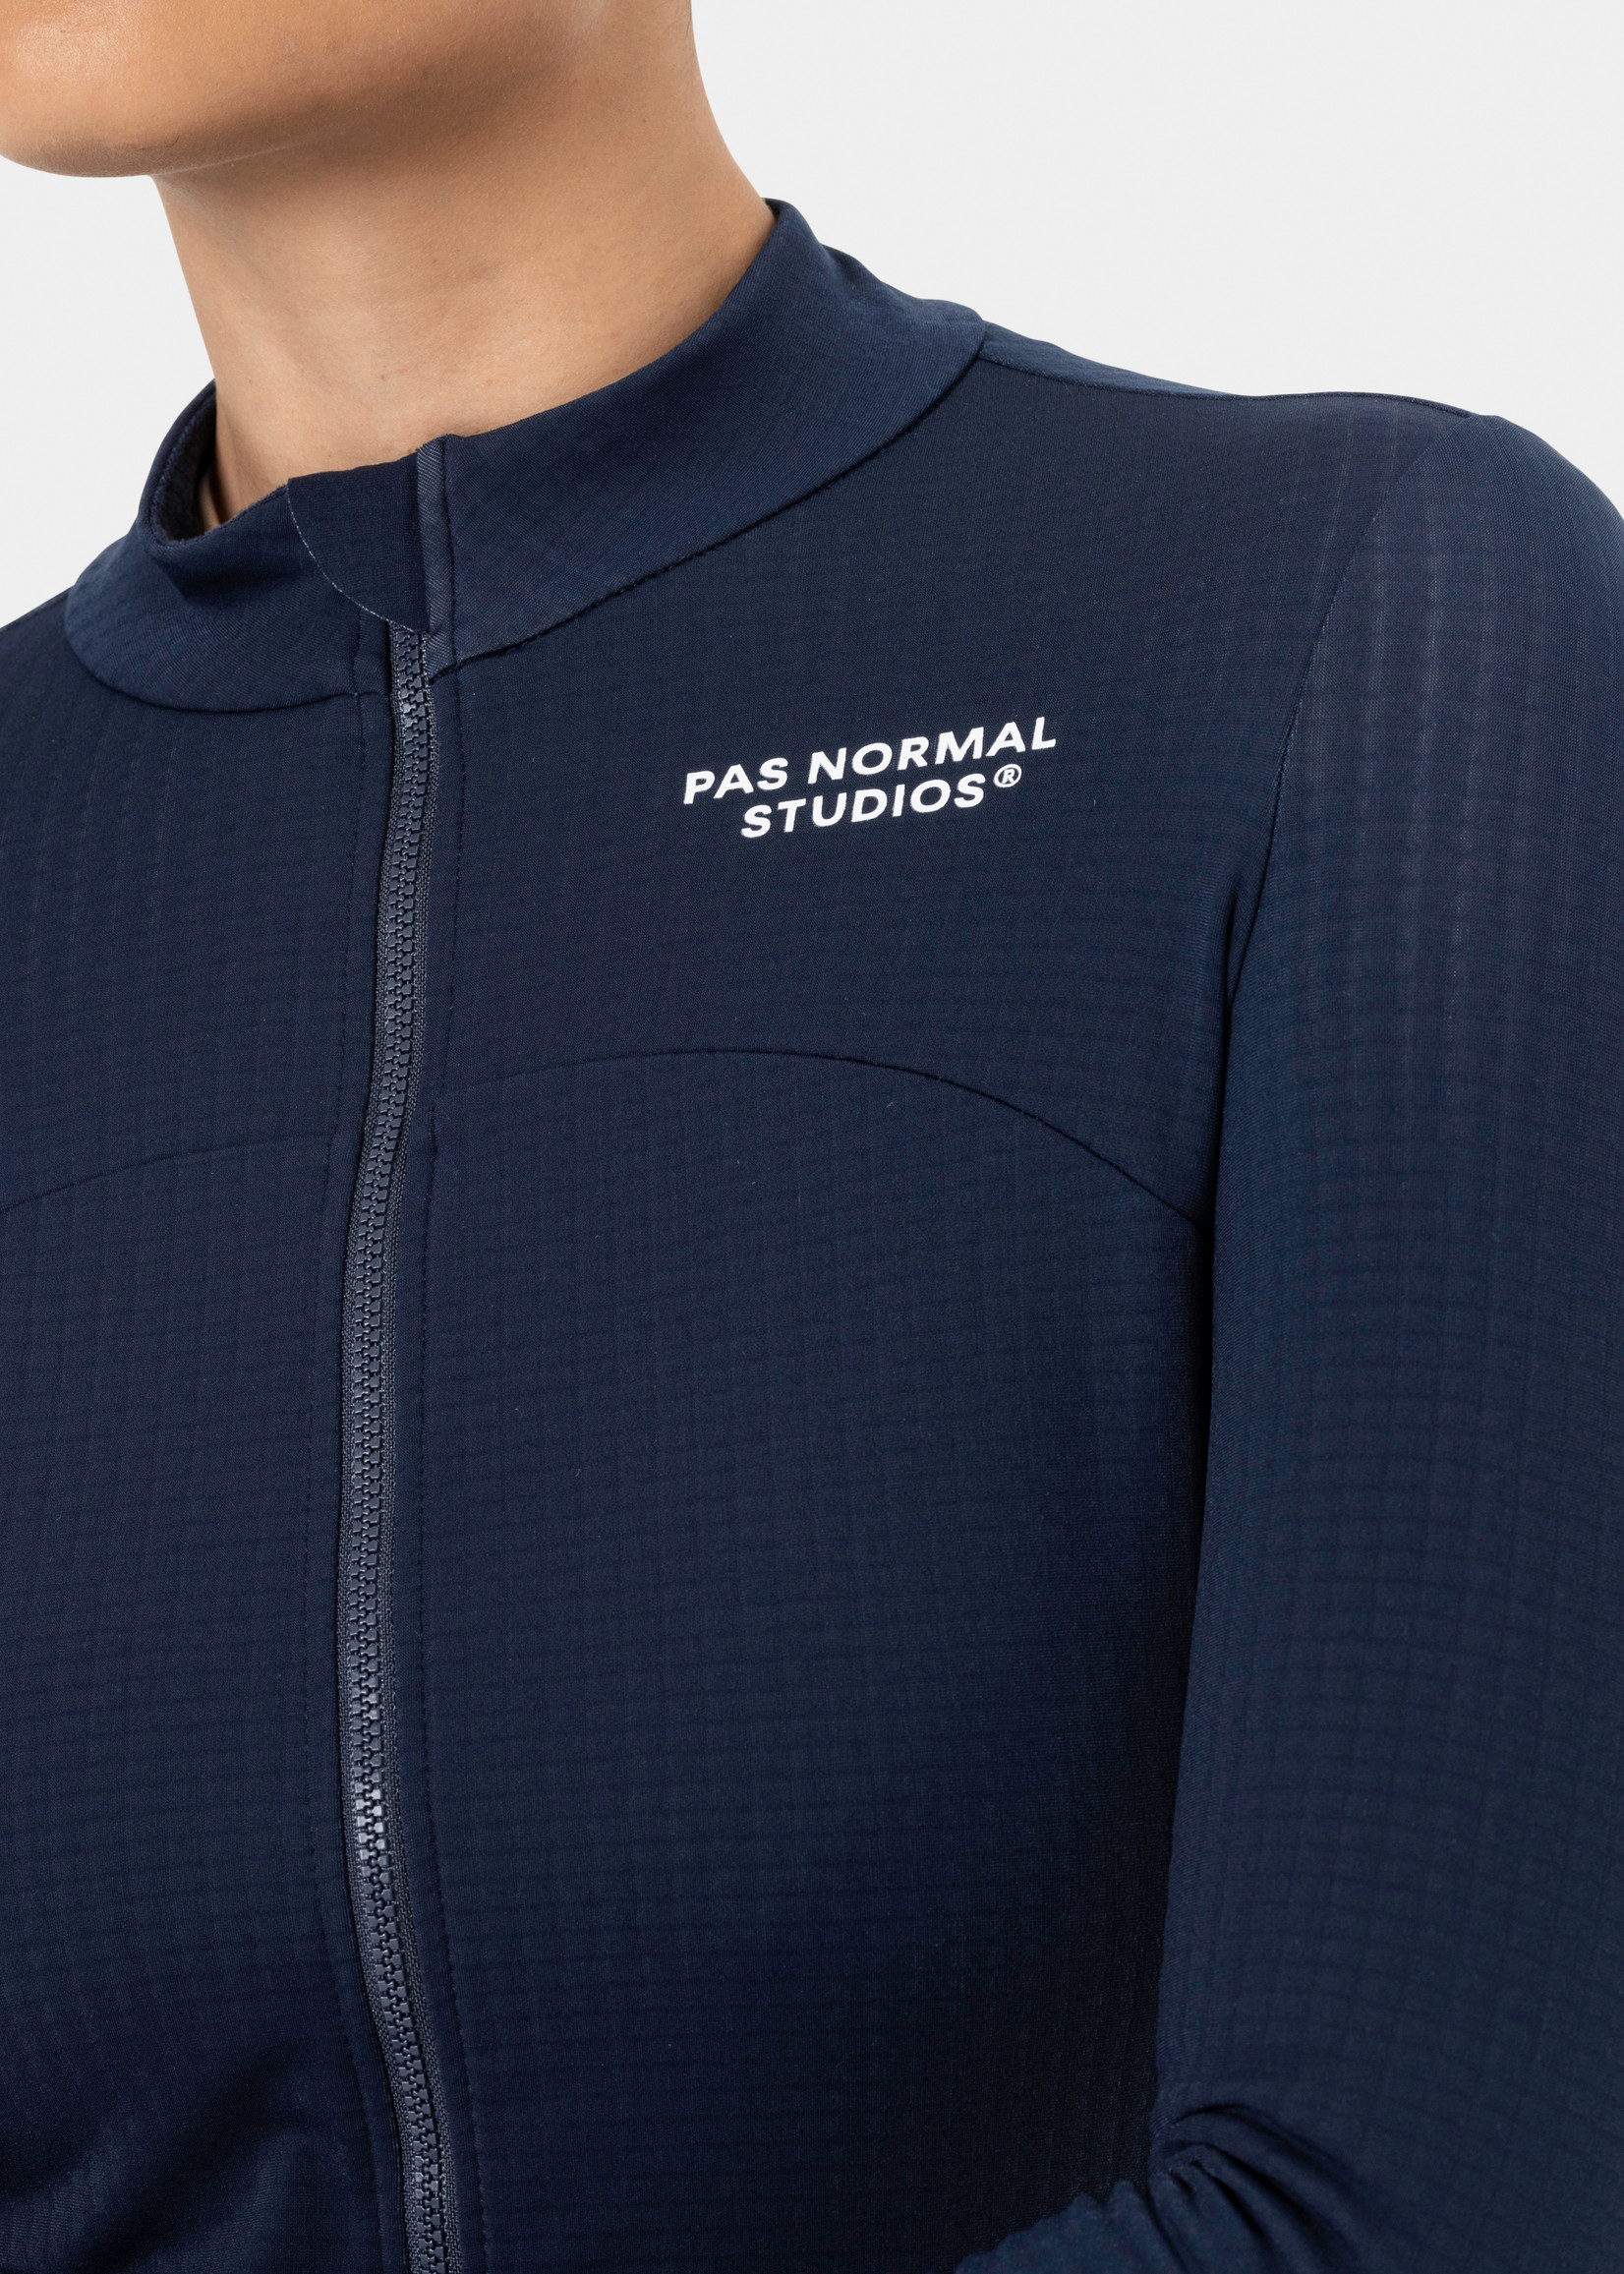 Pas Normal Studios Women's Essential Long Sleeve Jersey - Navy